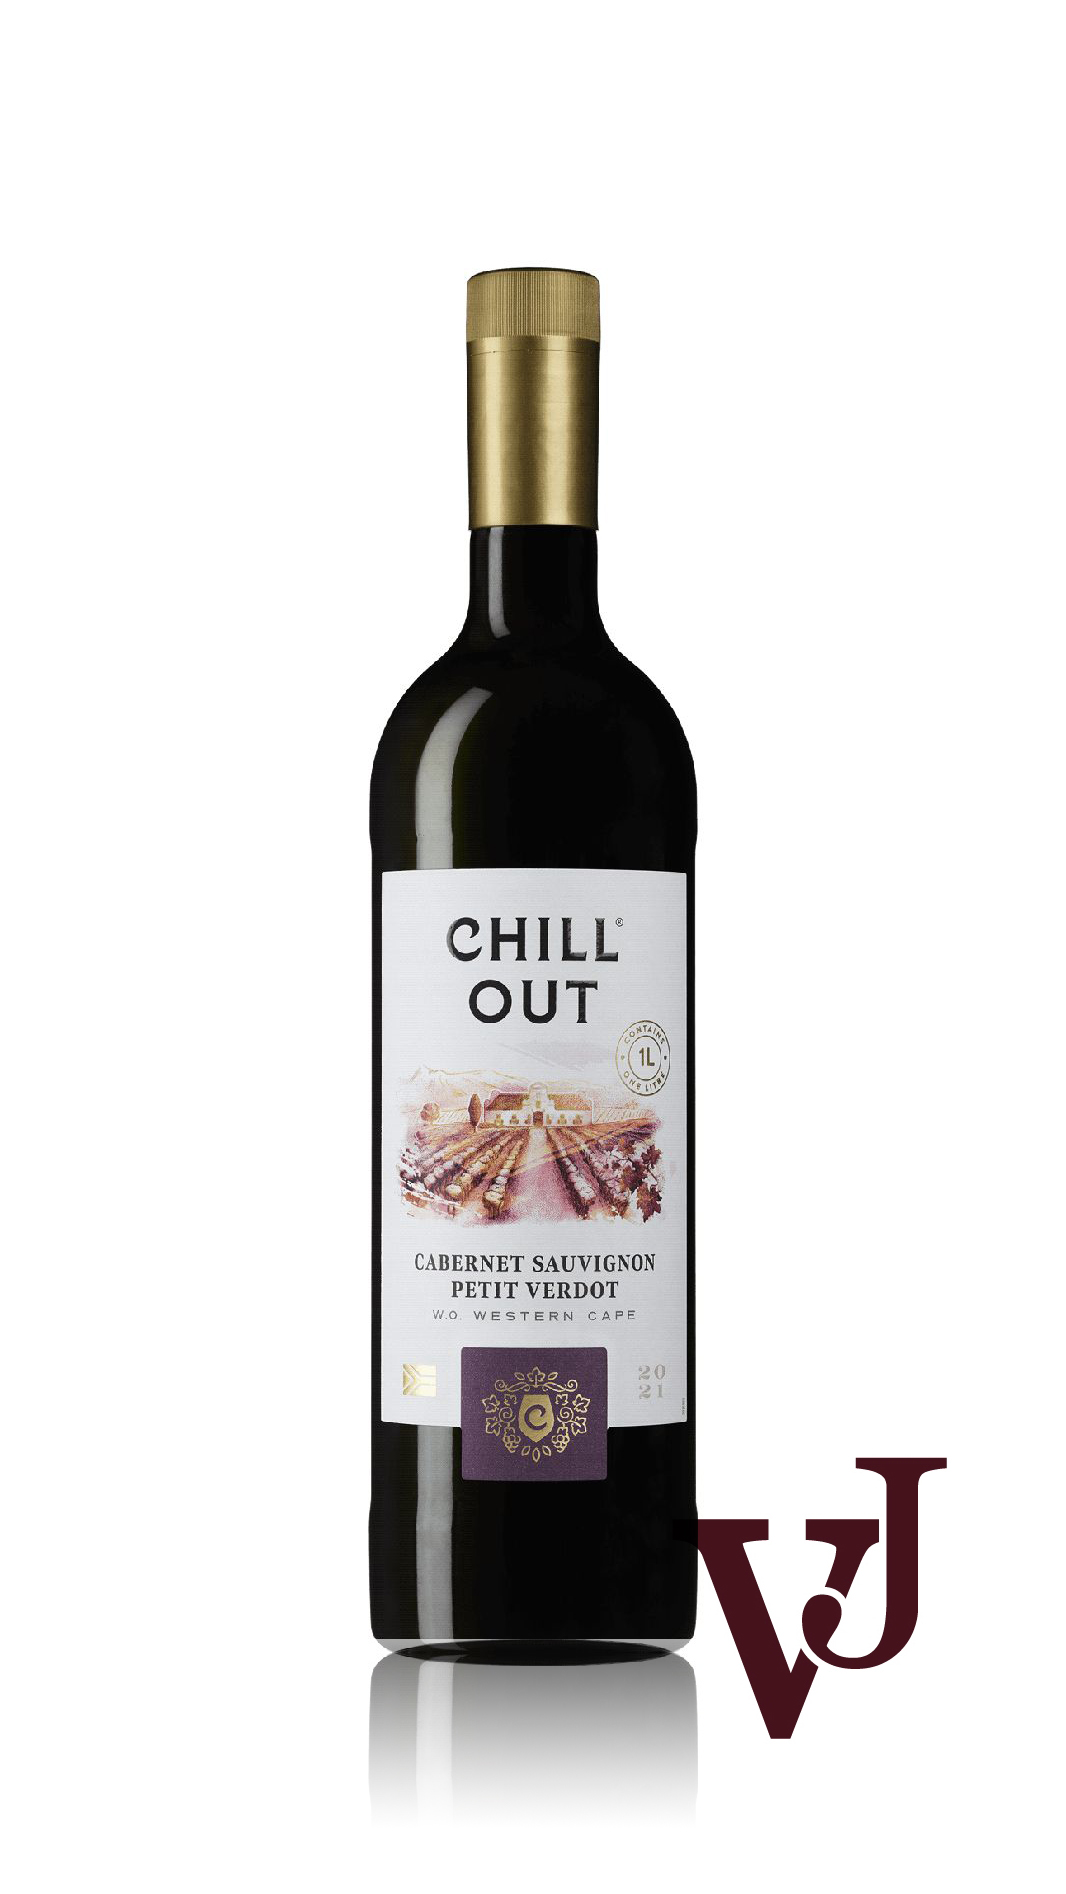 Rött Vin - CHILL OUT Cabernet Sauvignon Petit Verdot South Africa artikel nummer 244501 från producenten Altia från området Sydafrika - Vinjournalen.se